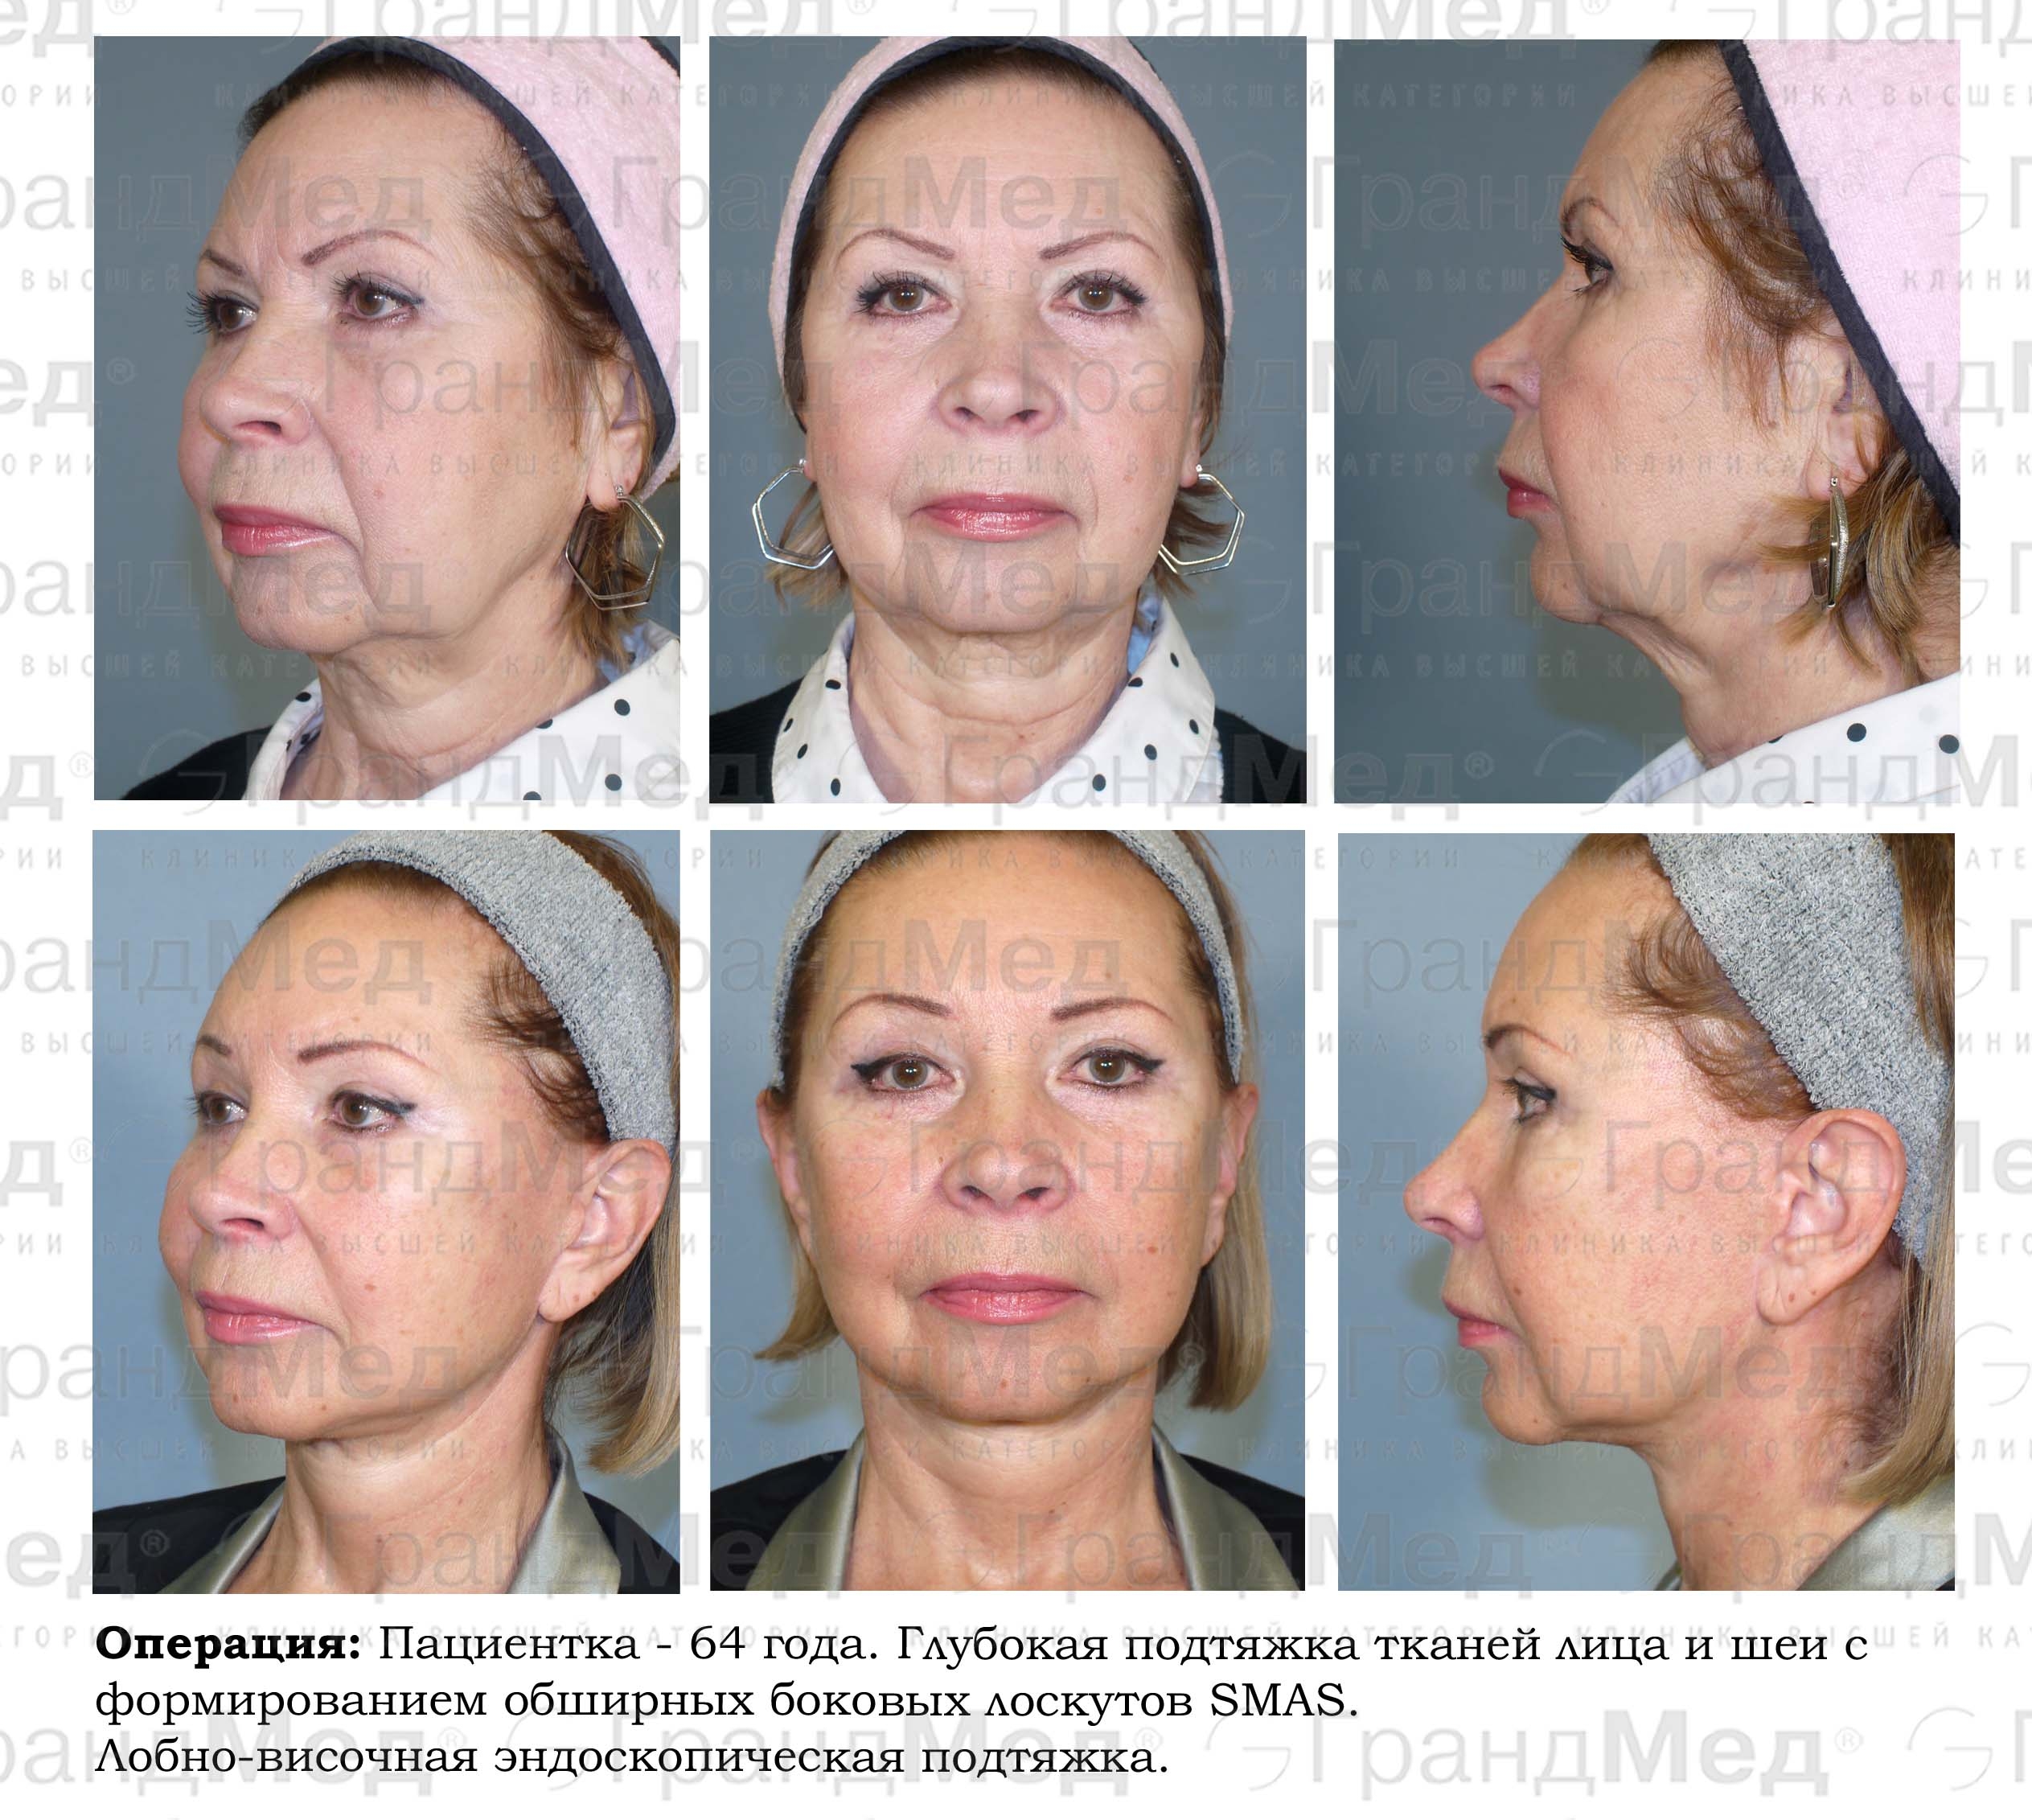 Плазмолифтинг отзывы фото до и после лицо. Плазмолифтинг (плазмотерапия). Плазмолифтинг для лица. Плазмолифтинг лица до и после. Плазменный лифтинг лица.